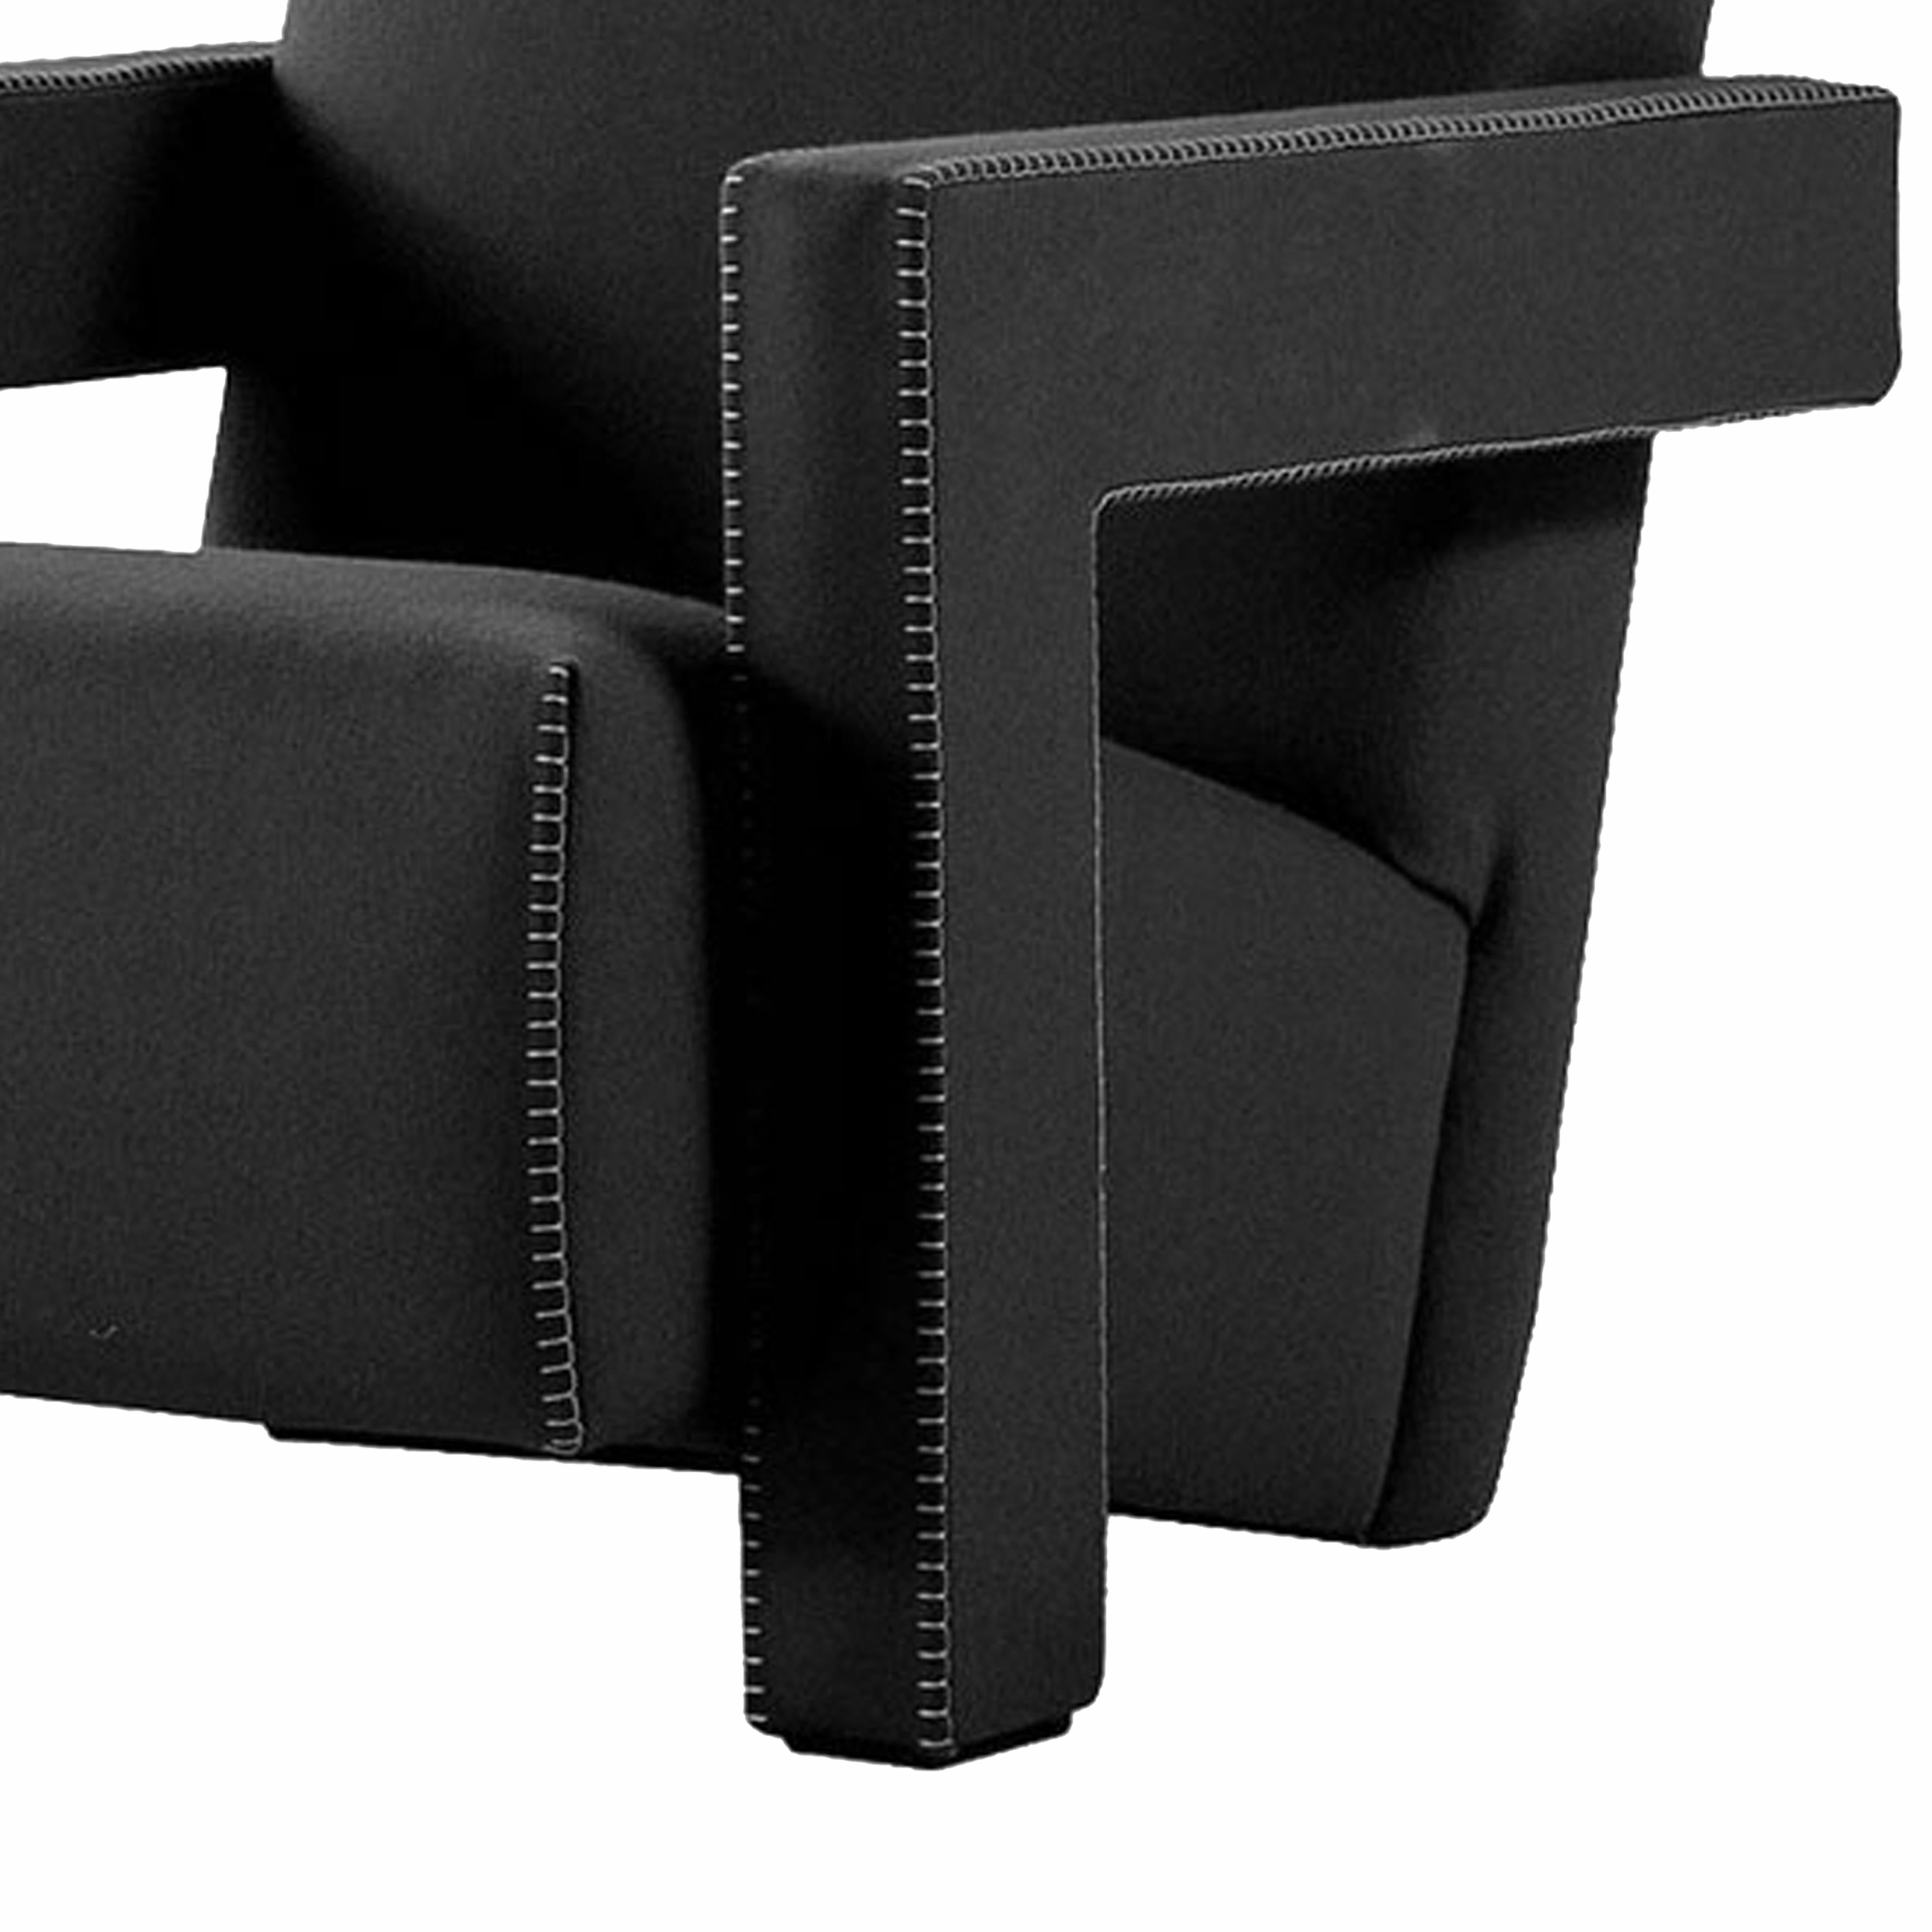 Sessel, entworfen von Gerrit Thomas Rietveld im Jahr 1935. Neu aufgelegt im Jahr 2015.
Hergestellt von Cassina in Italien.

Gerrit T. Rietveld entwickelte den Entwurf für den Utrecht-Sessel 1935, als er für das Kaufhaus Metz & Co. in Amsterdam